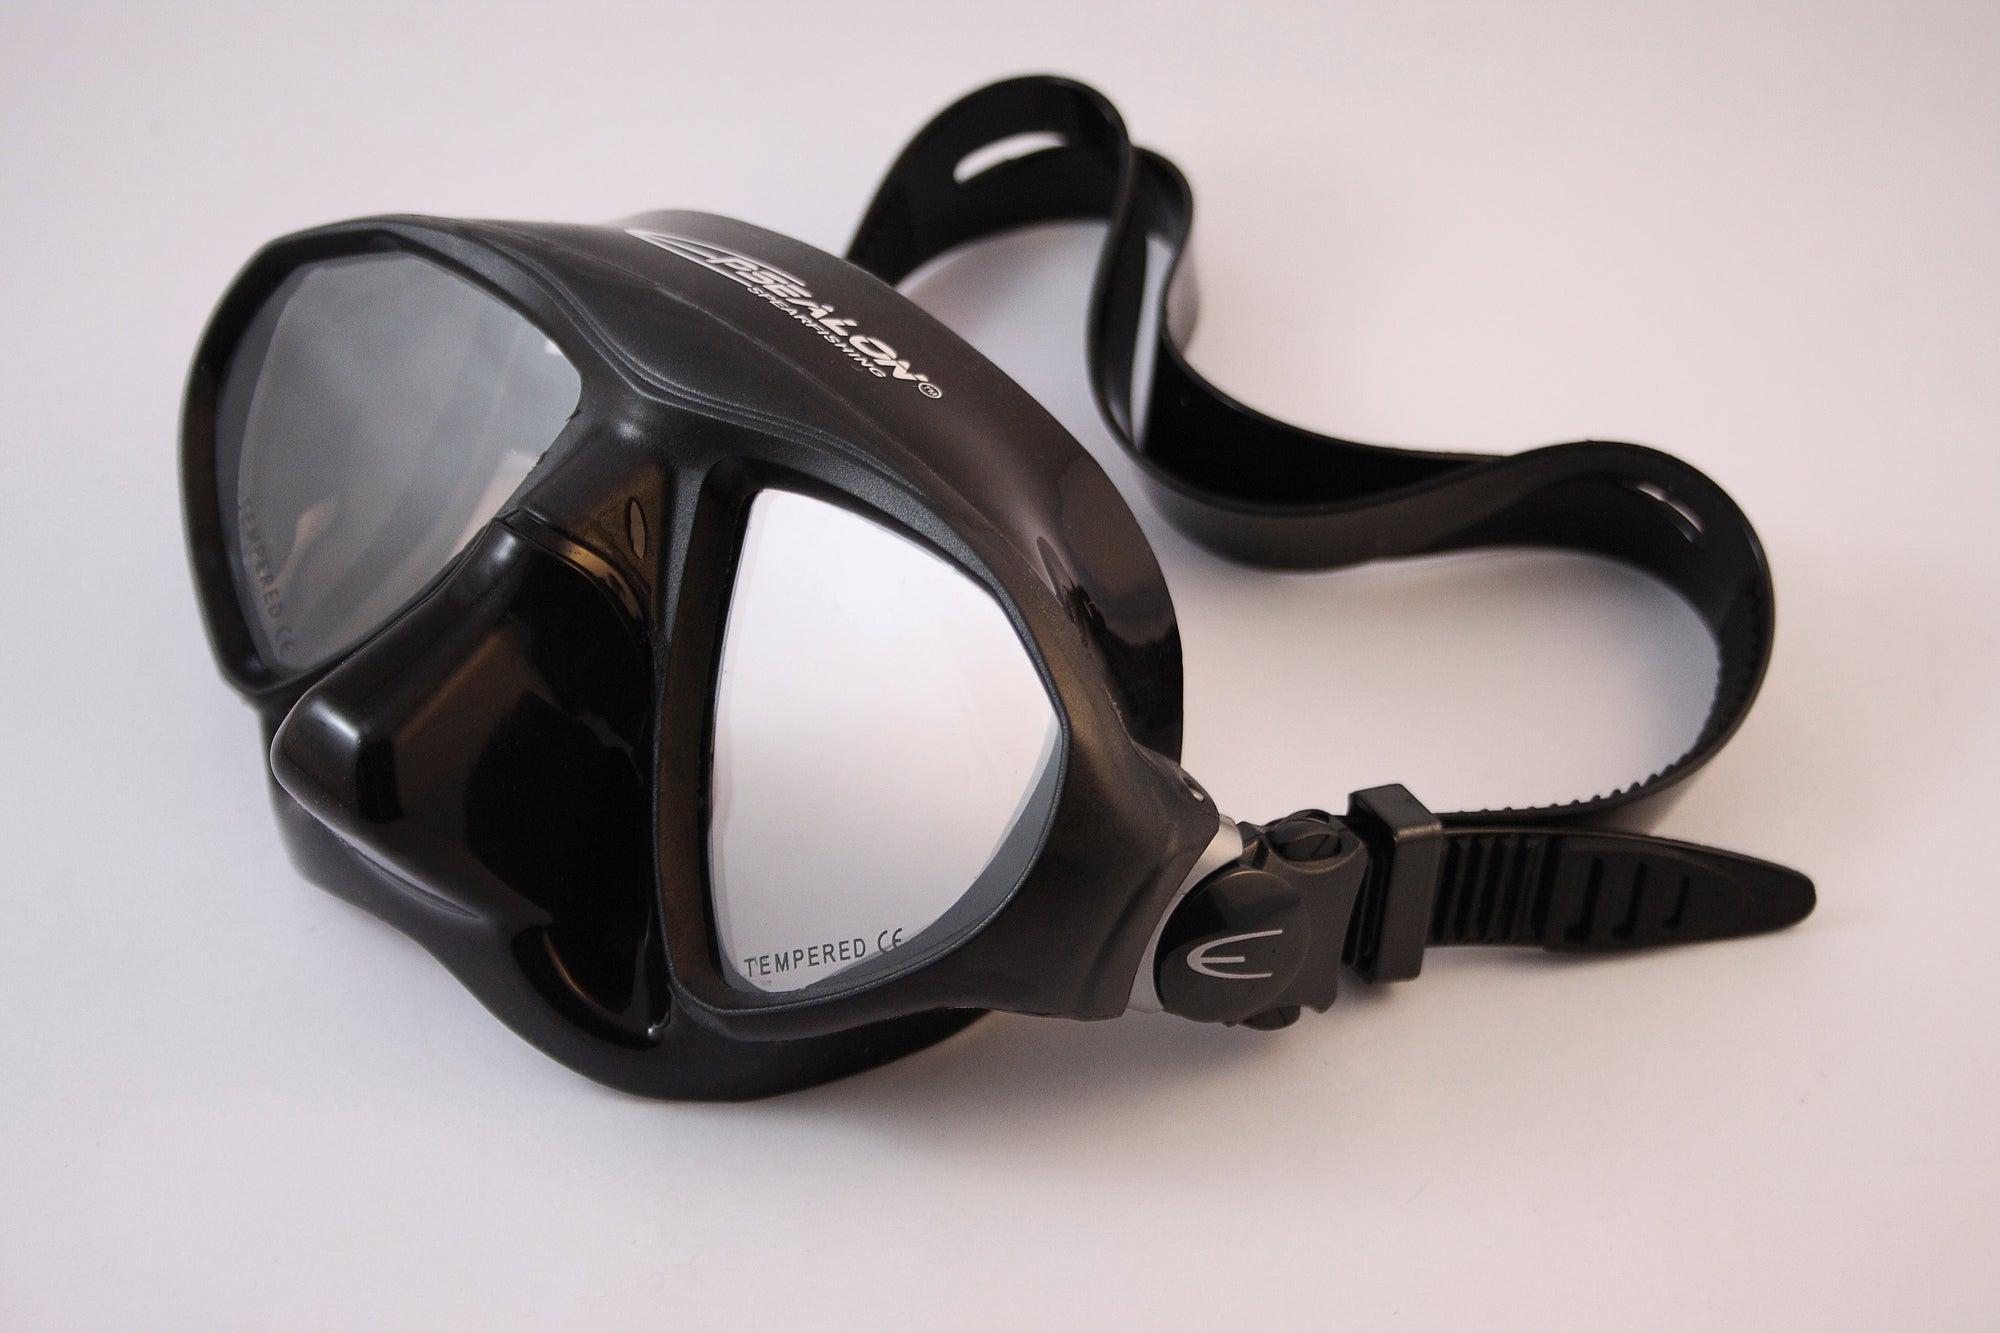 Epsealon Minisub Classic Dive Mask - American Dive Company